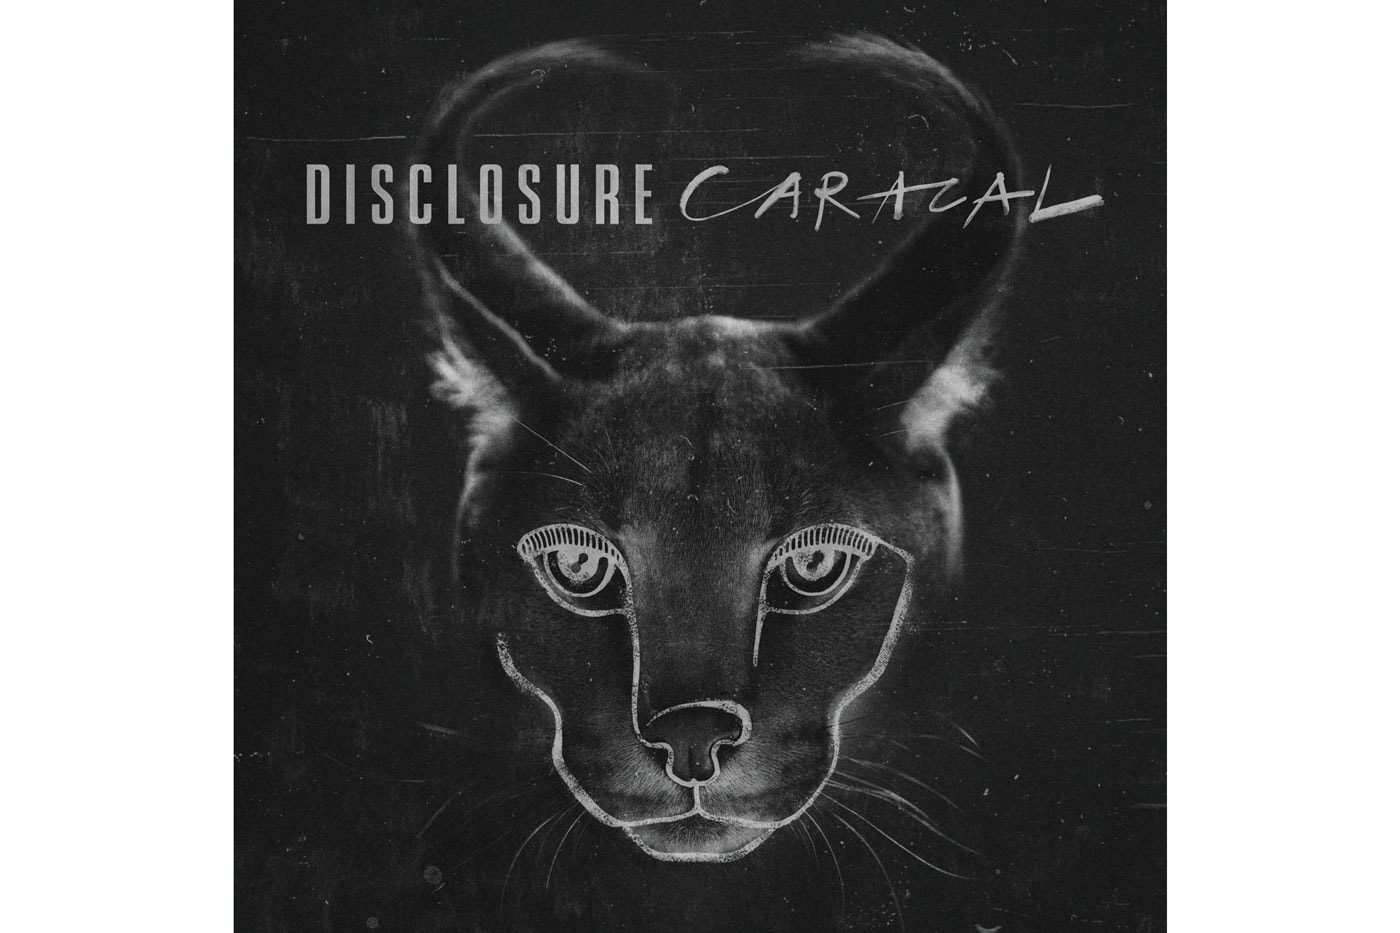 Disclosure - Caracal (Album Stream)